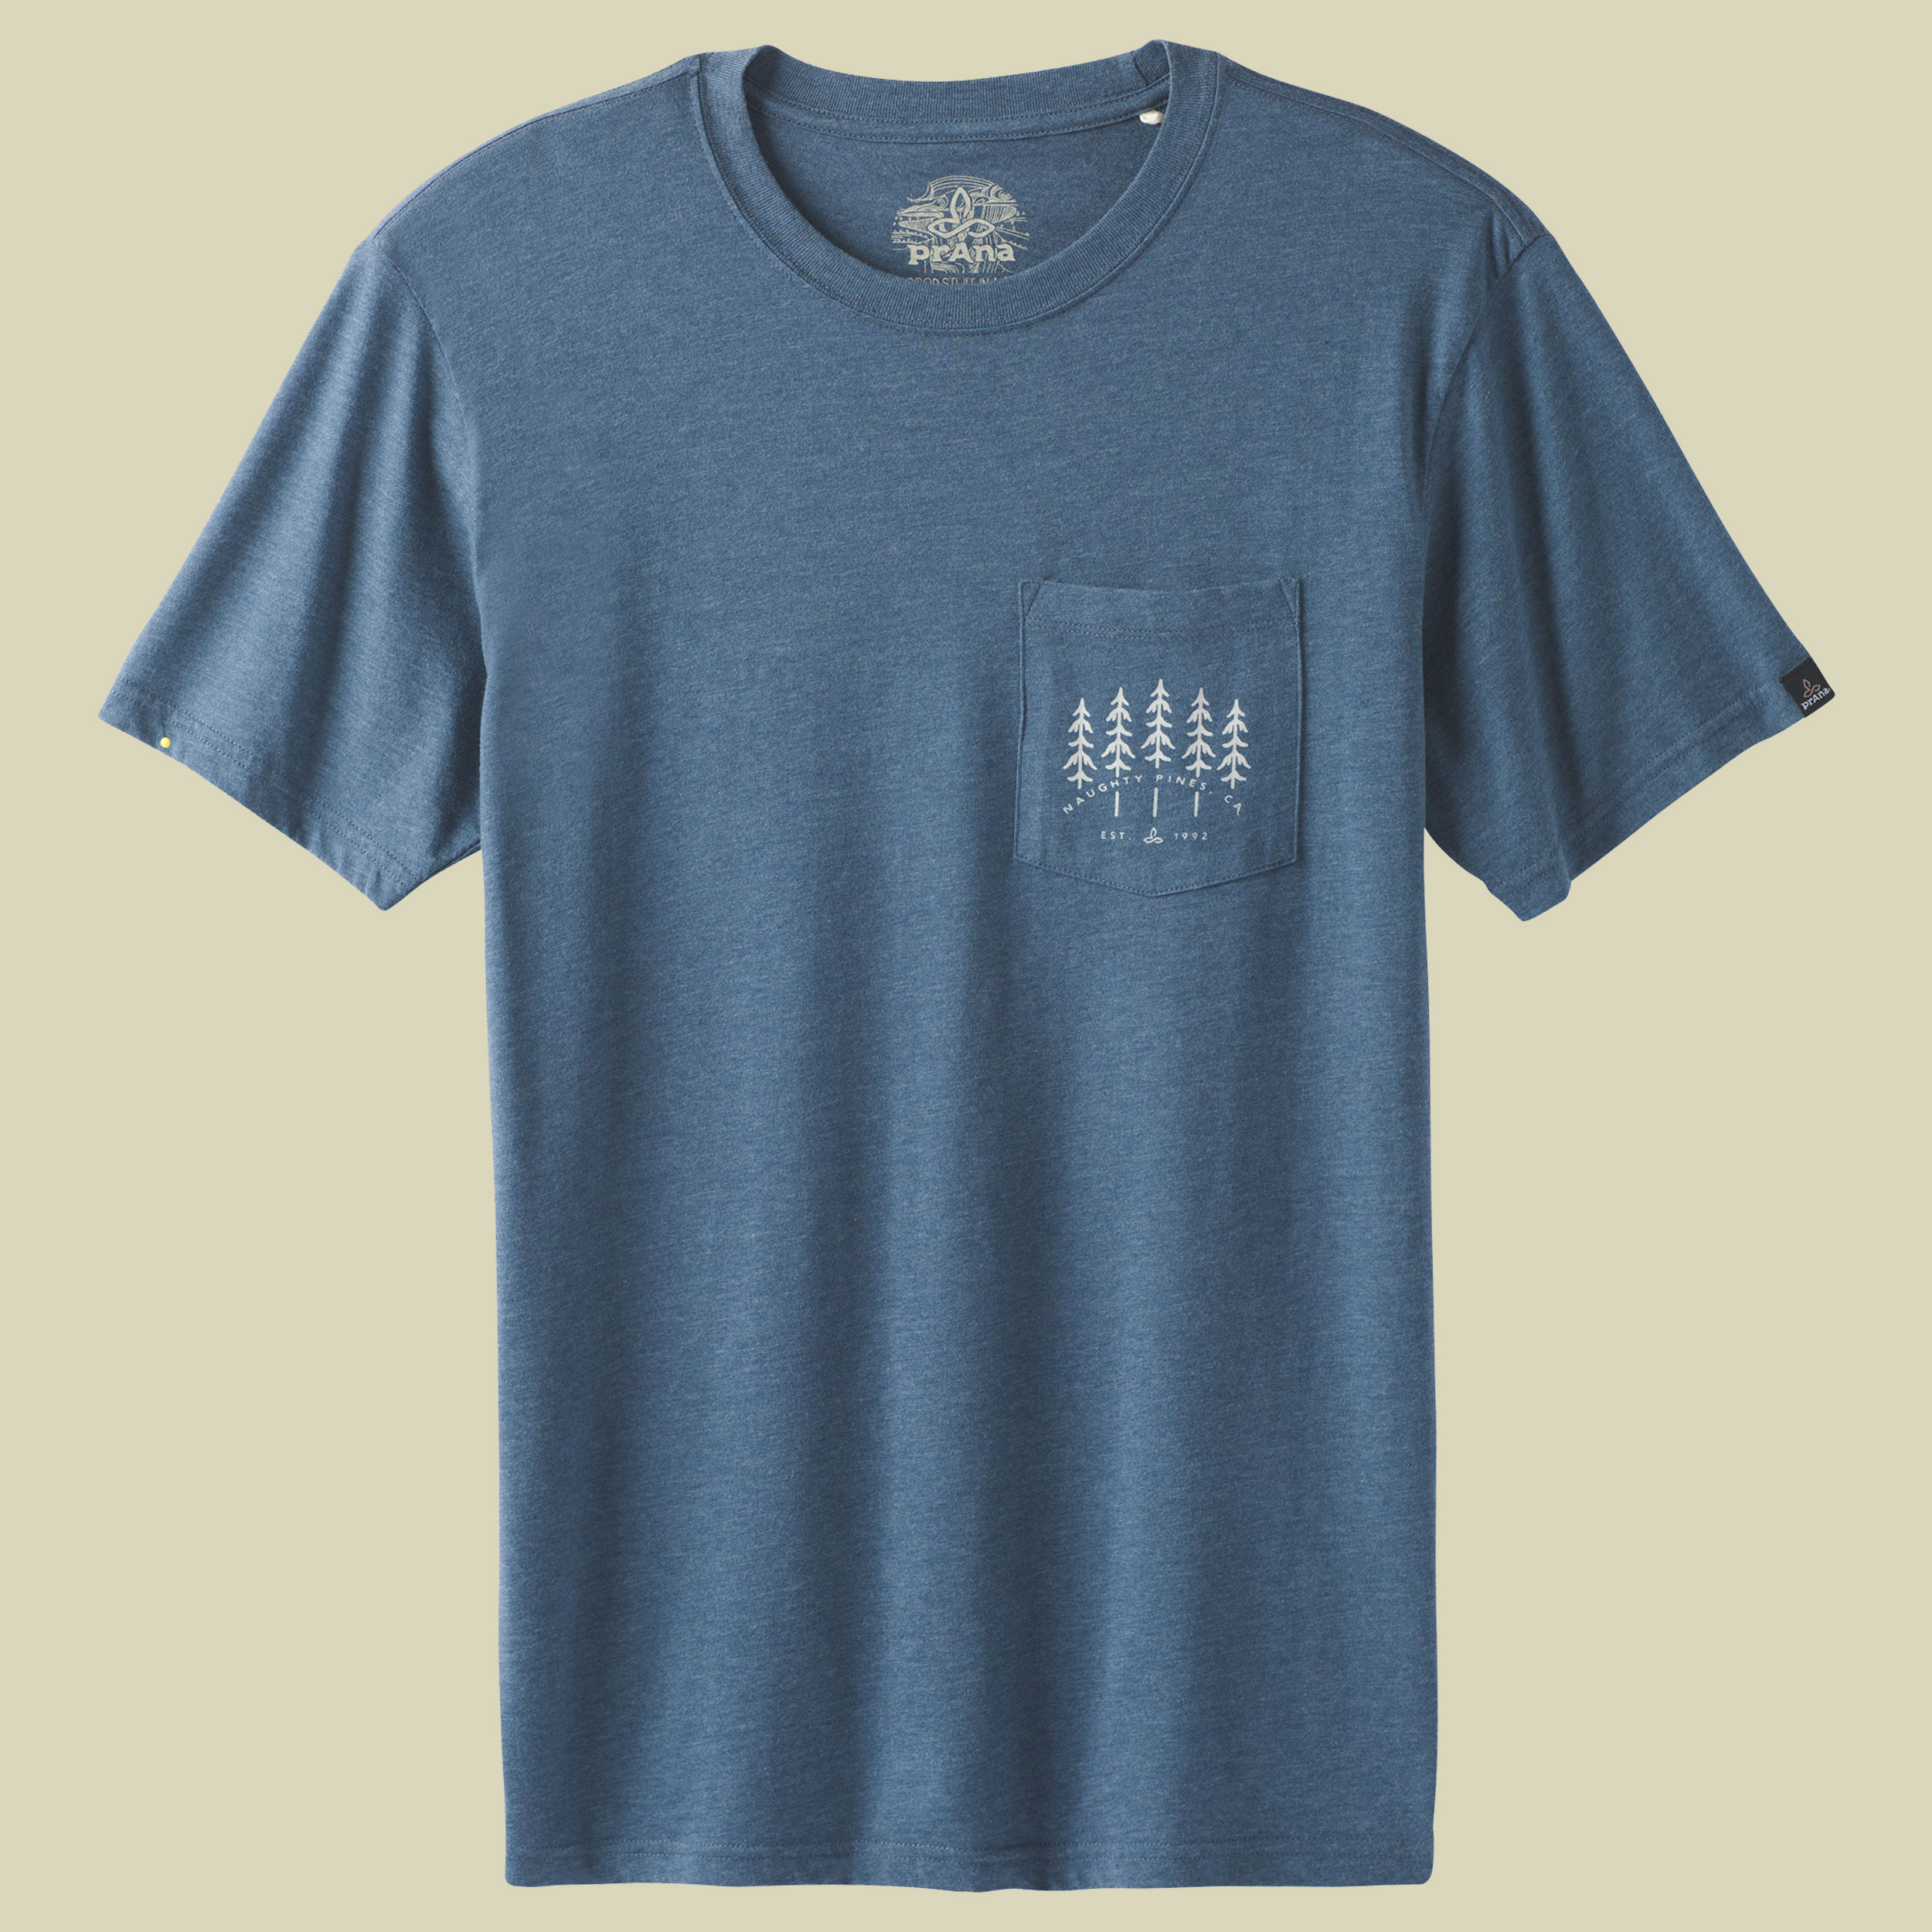 Hollis Pocket T-Shirt Men Größe XL Farbe denim heather